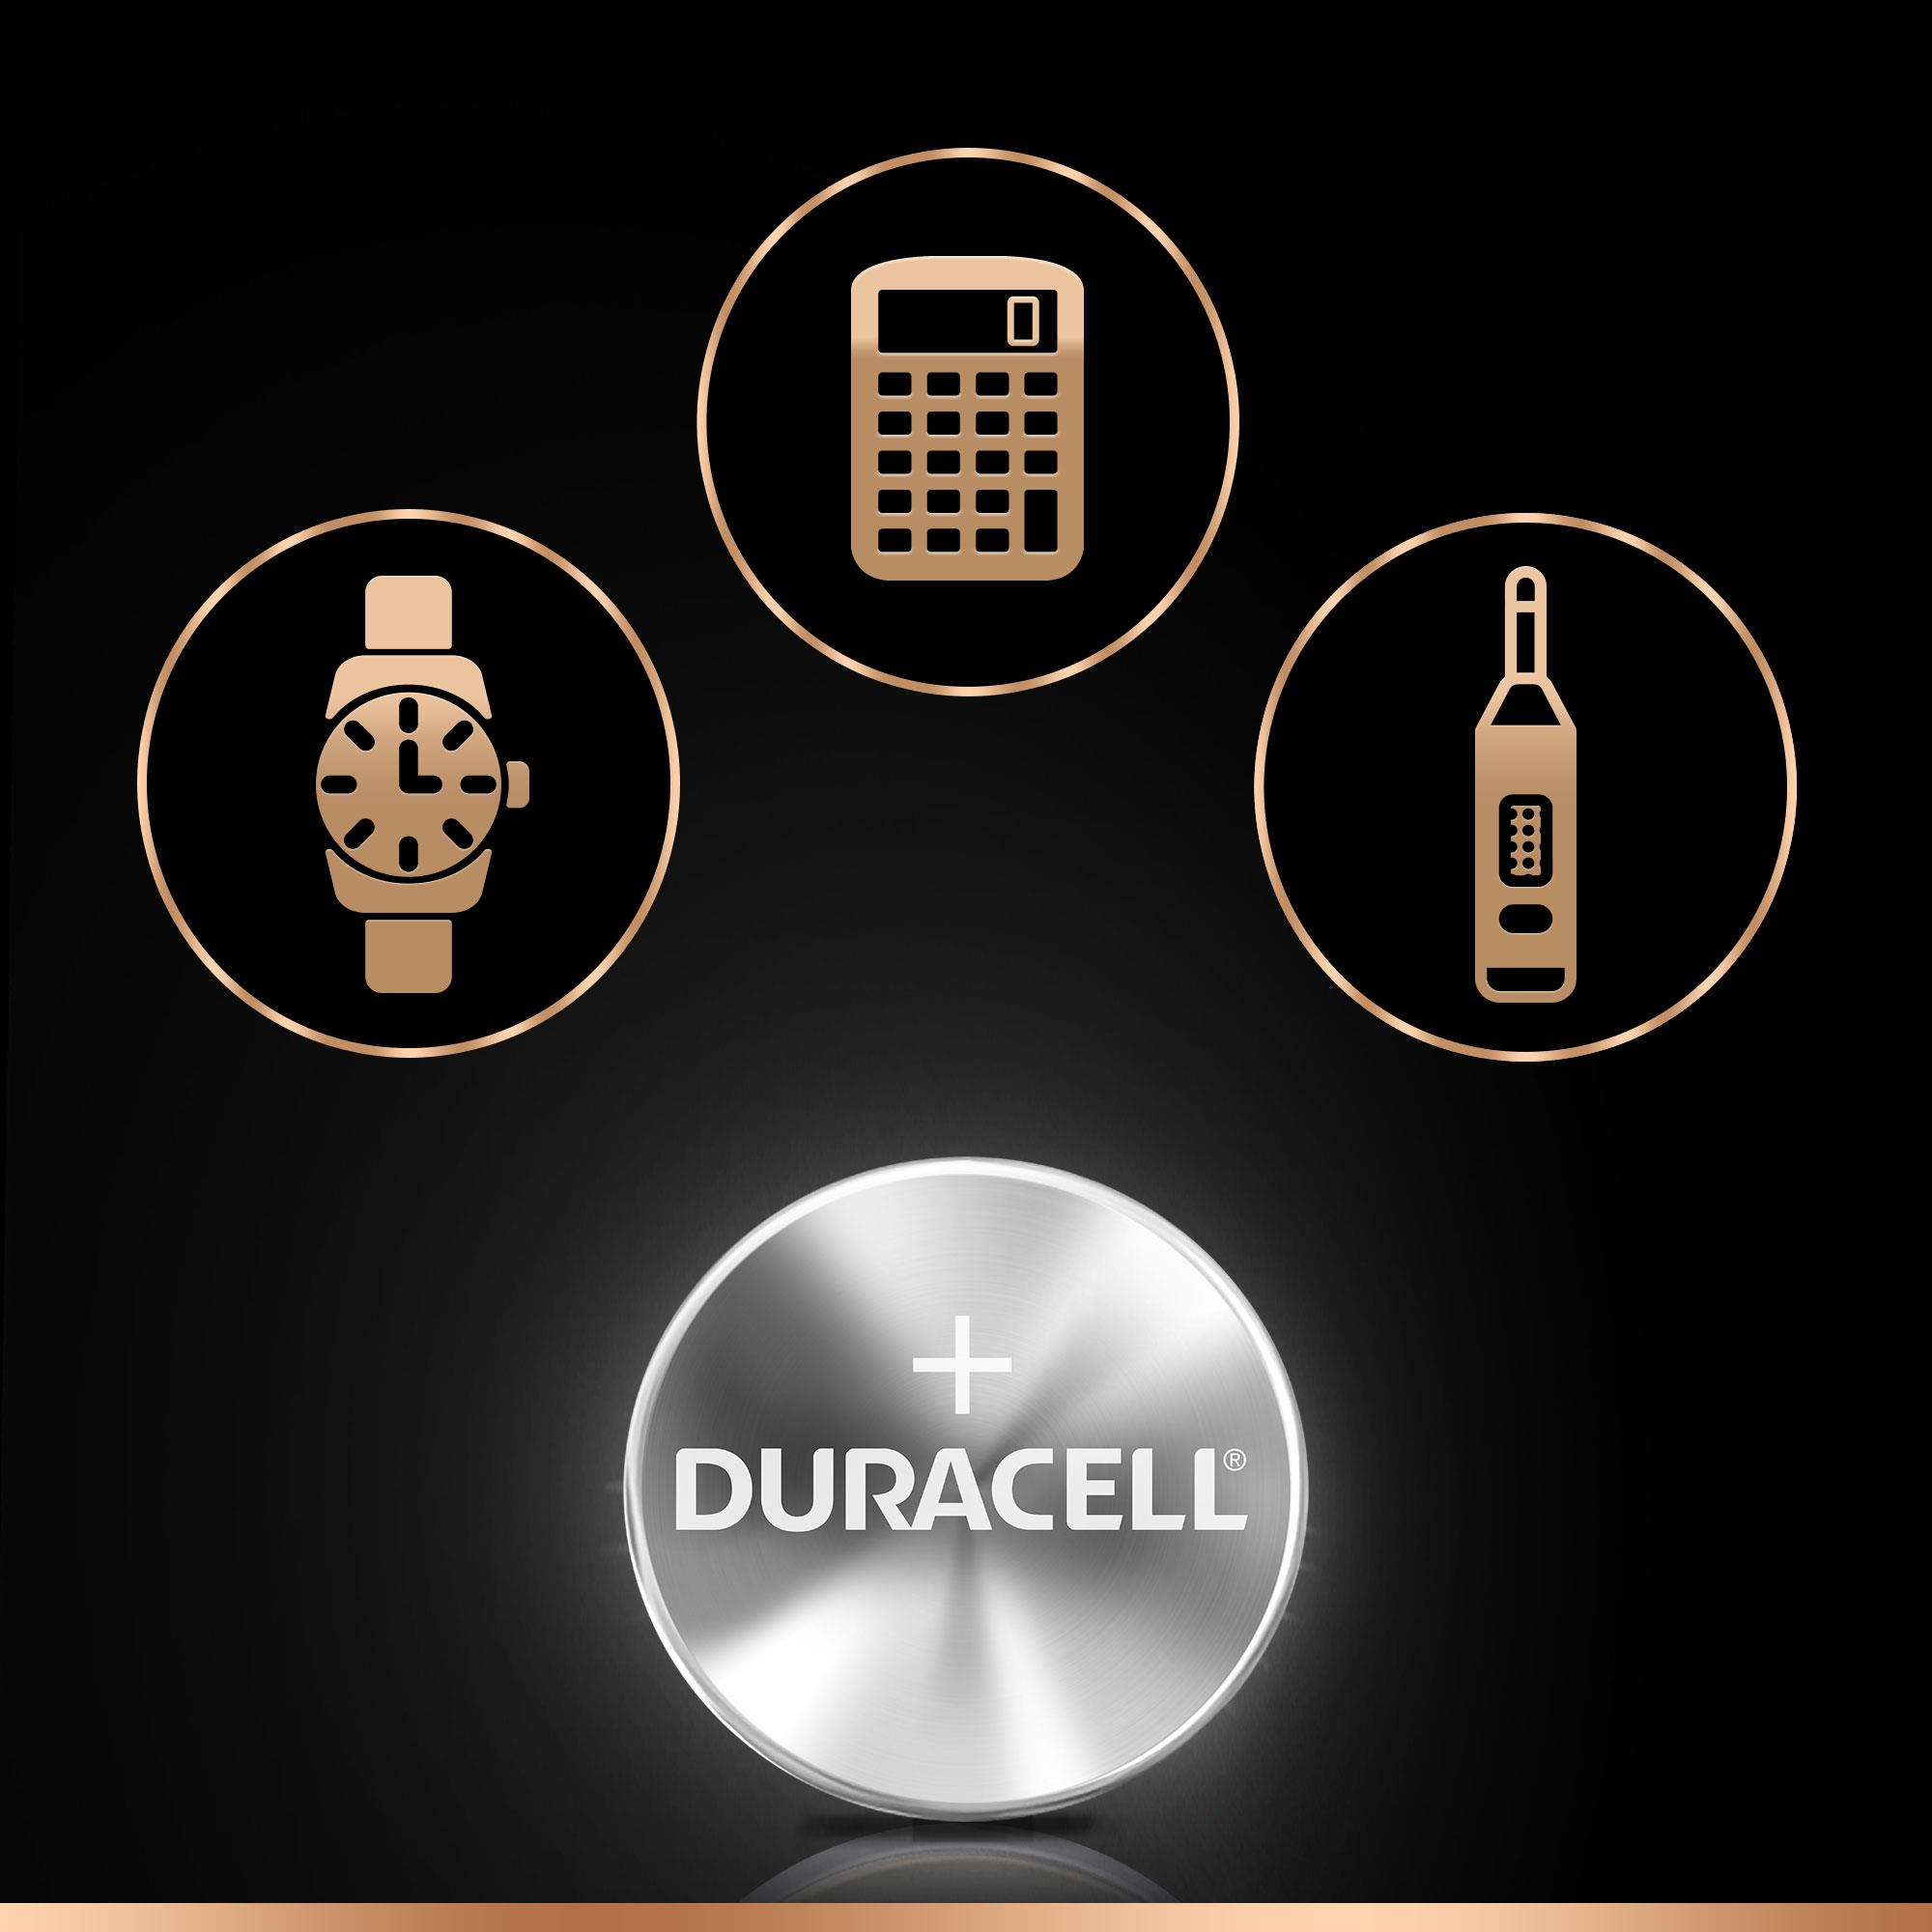 DURACELL Specialty 377 Batterie, 1.5 Silber-Oxid, Stück 1 Volt